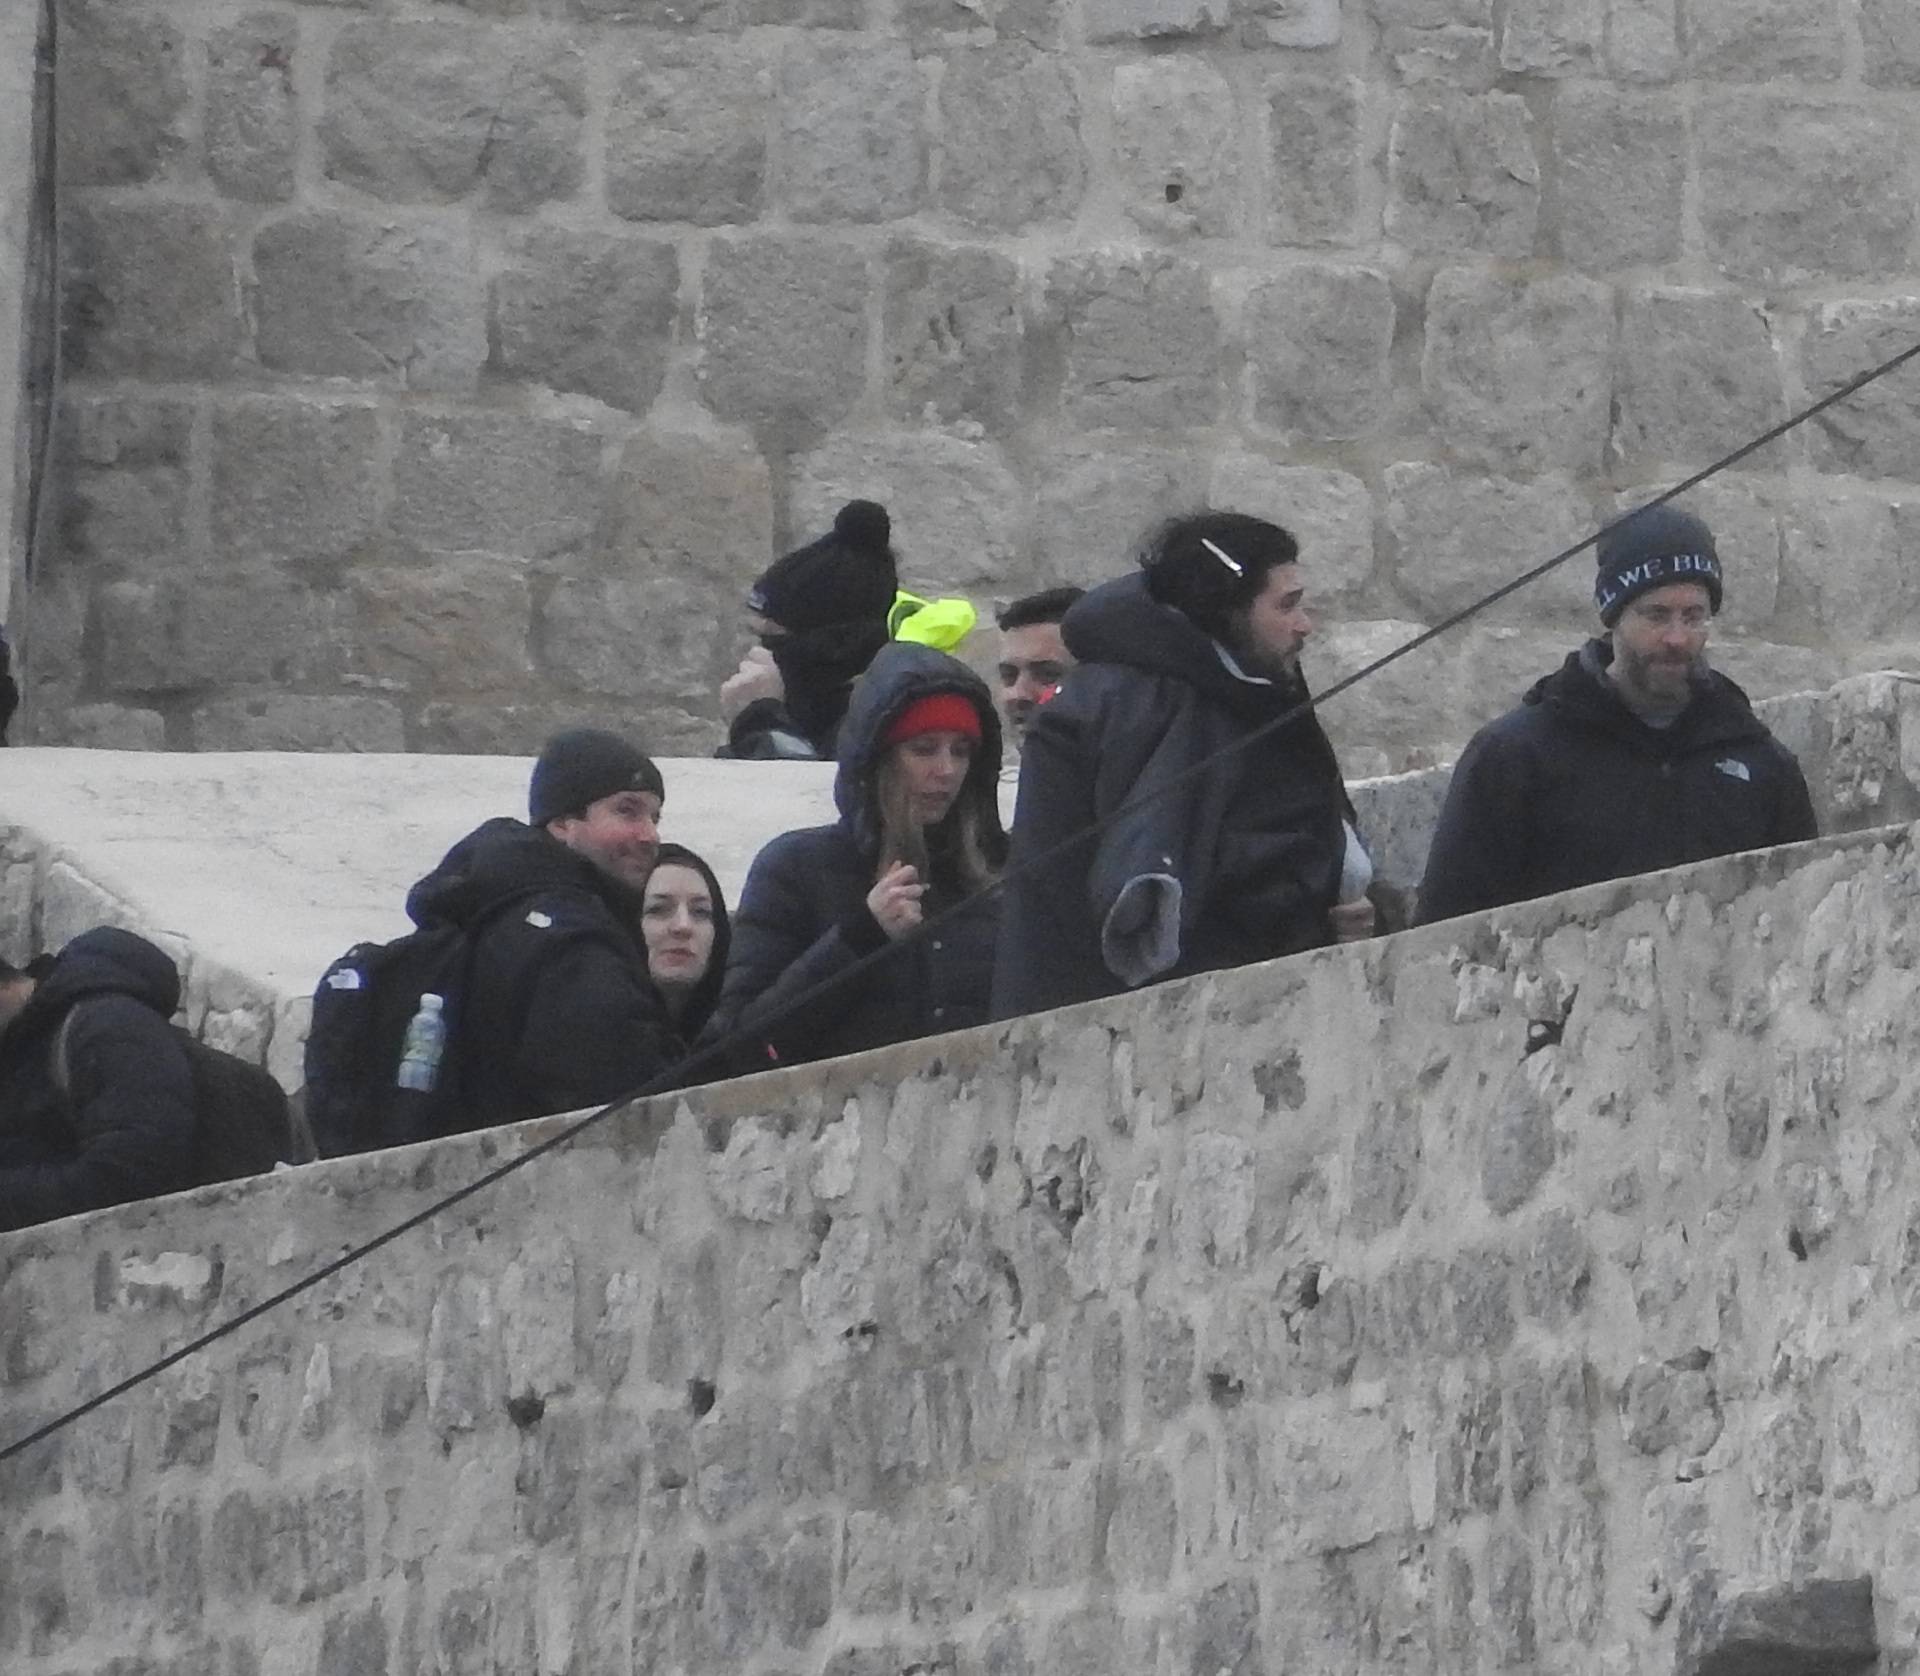 Jon Snow stigao u Dubrovnik: Na setu serije opušta se kavom